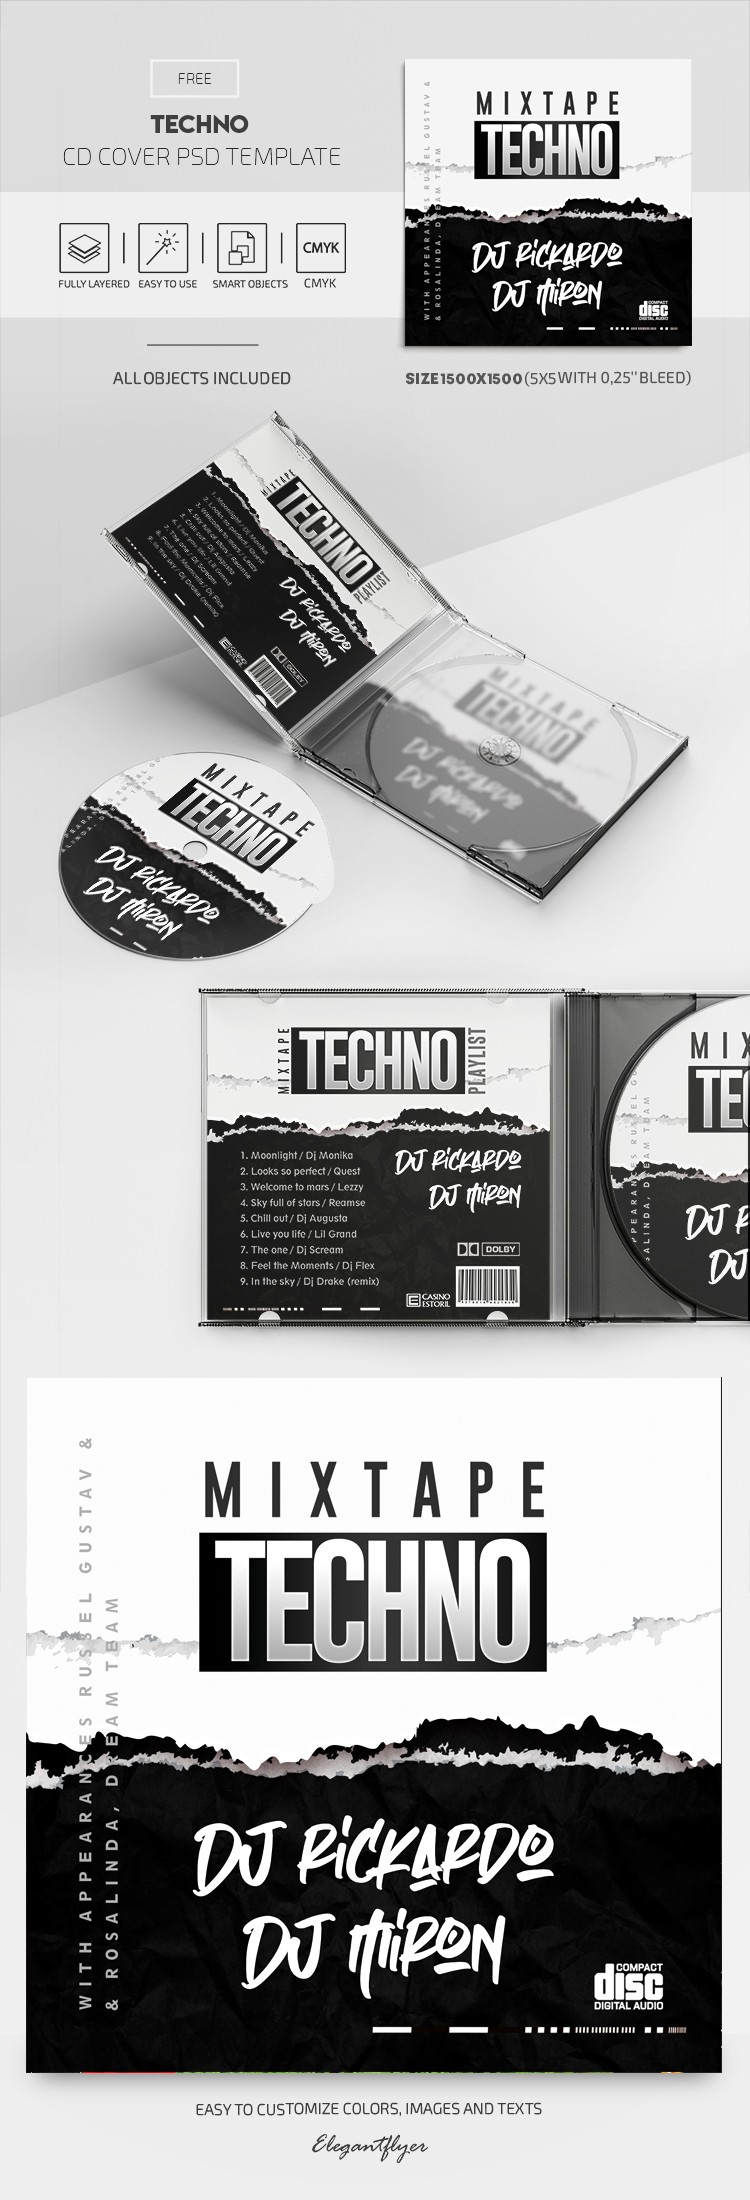 Capa do CD Techno by ElegantFlyer